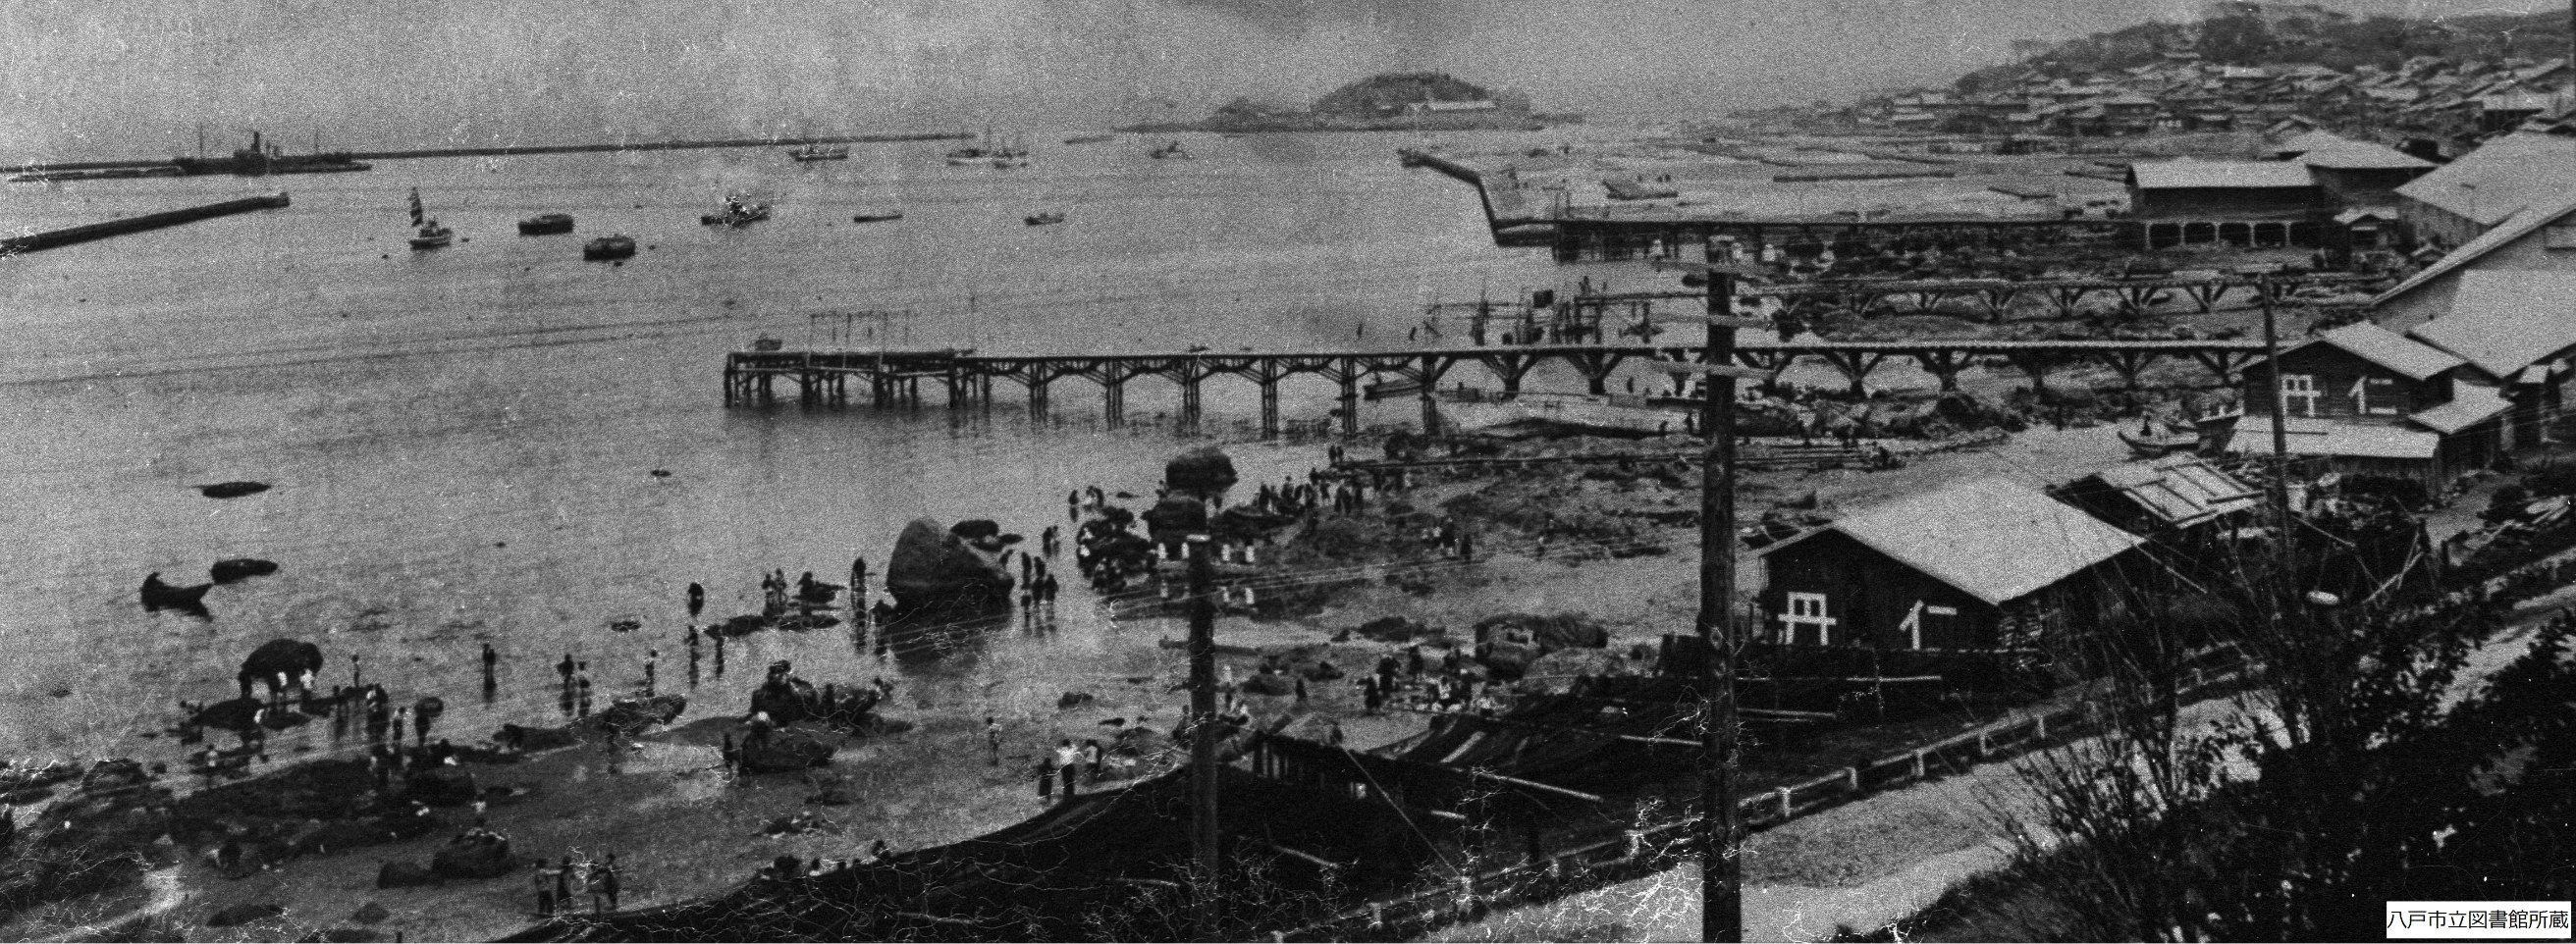 Improvement works underway in Hachinohe Port (1930)